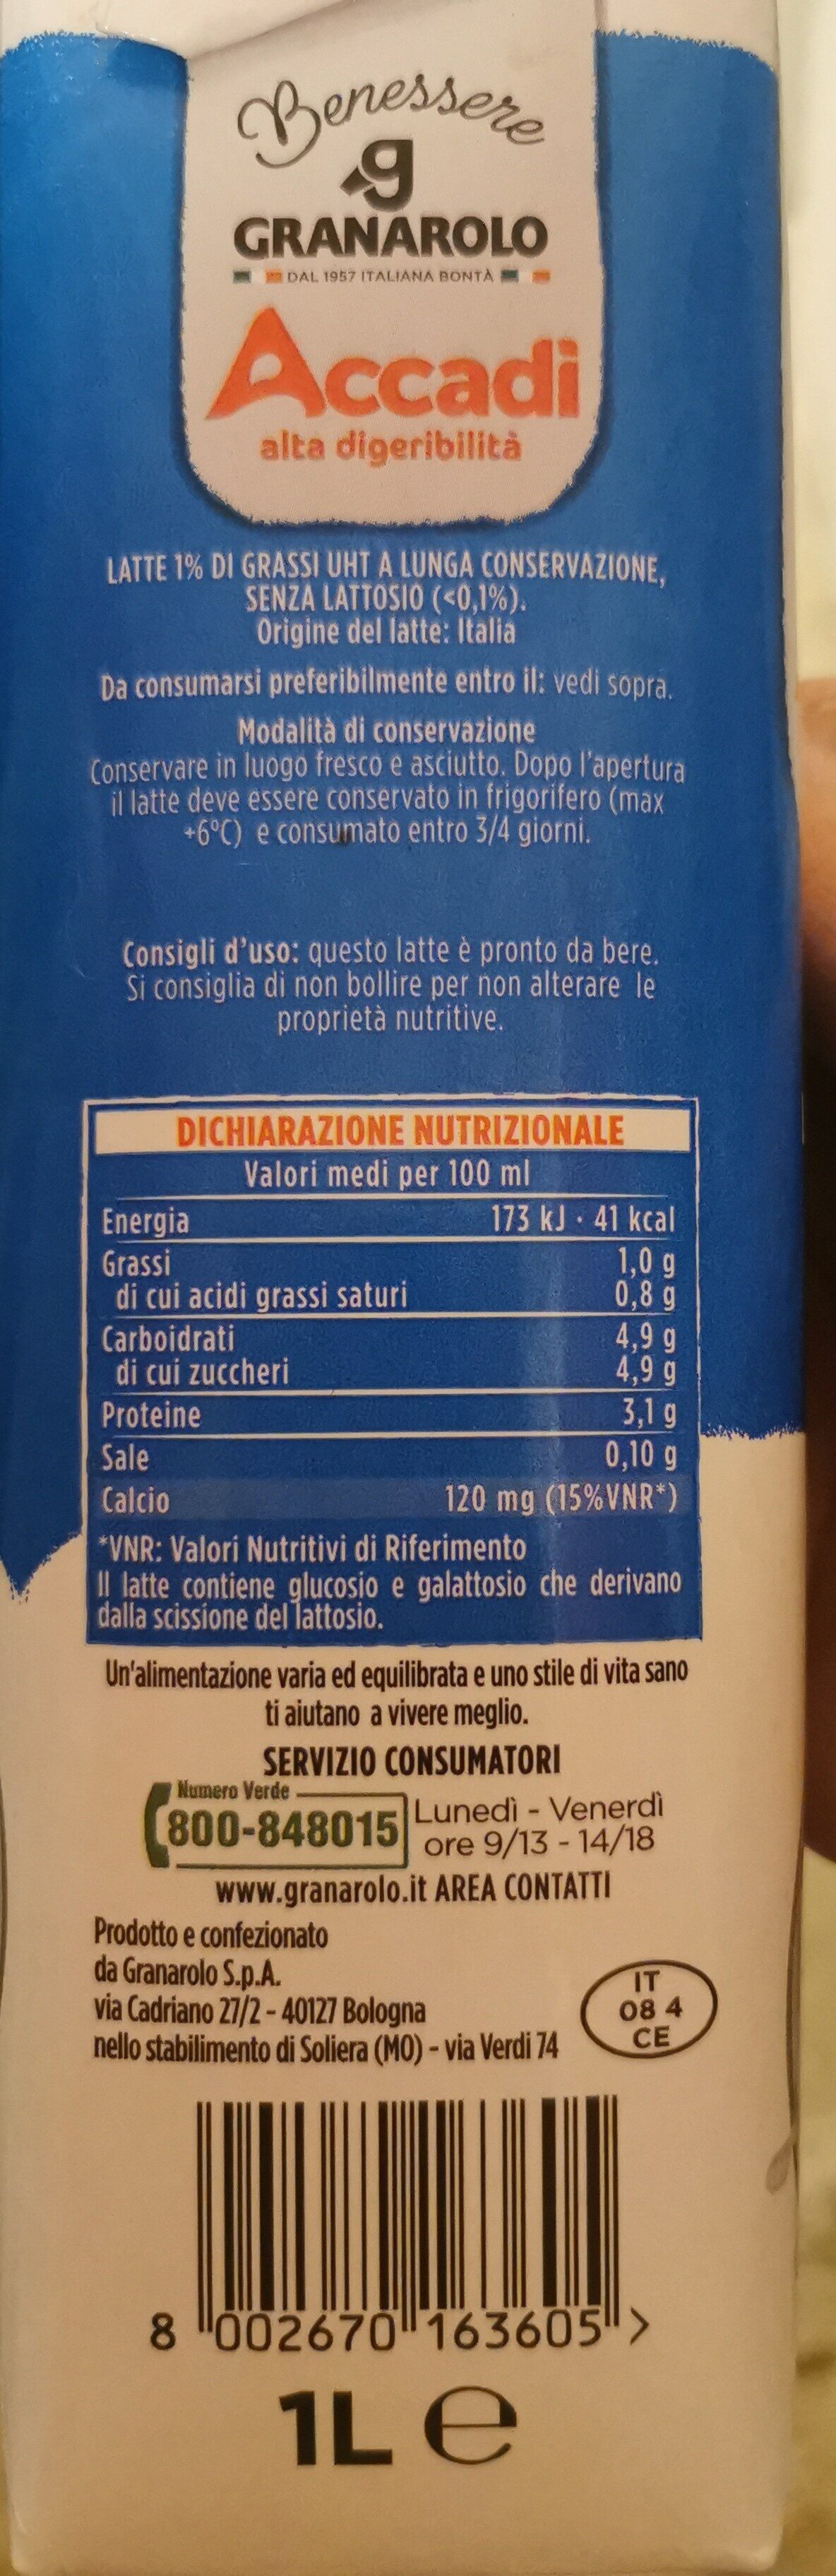 Latte, senza lattosio, 1% di grassi - Ingredientes - it